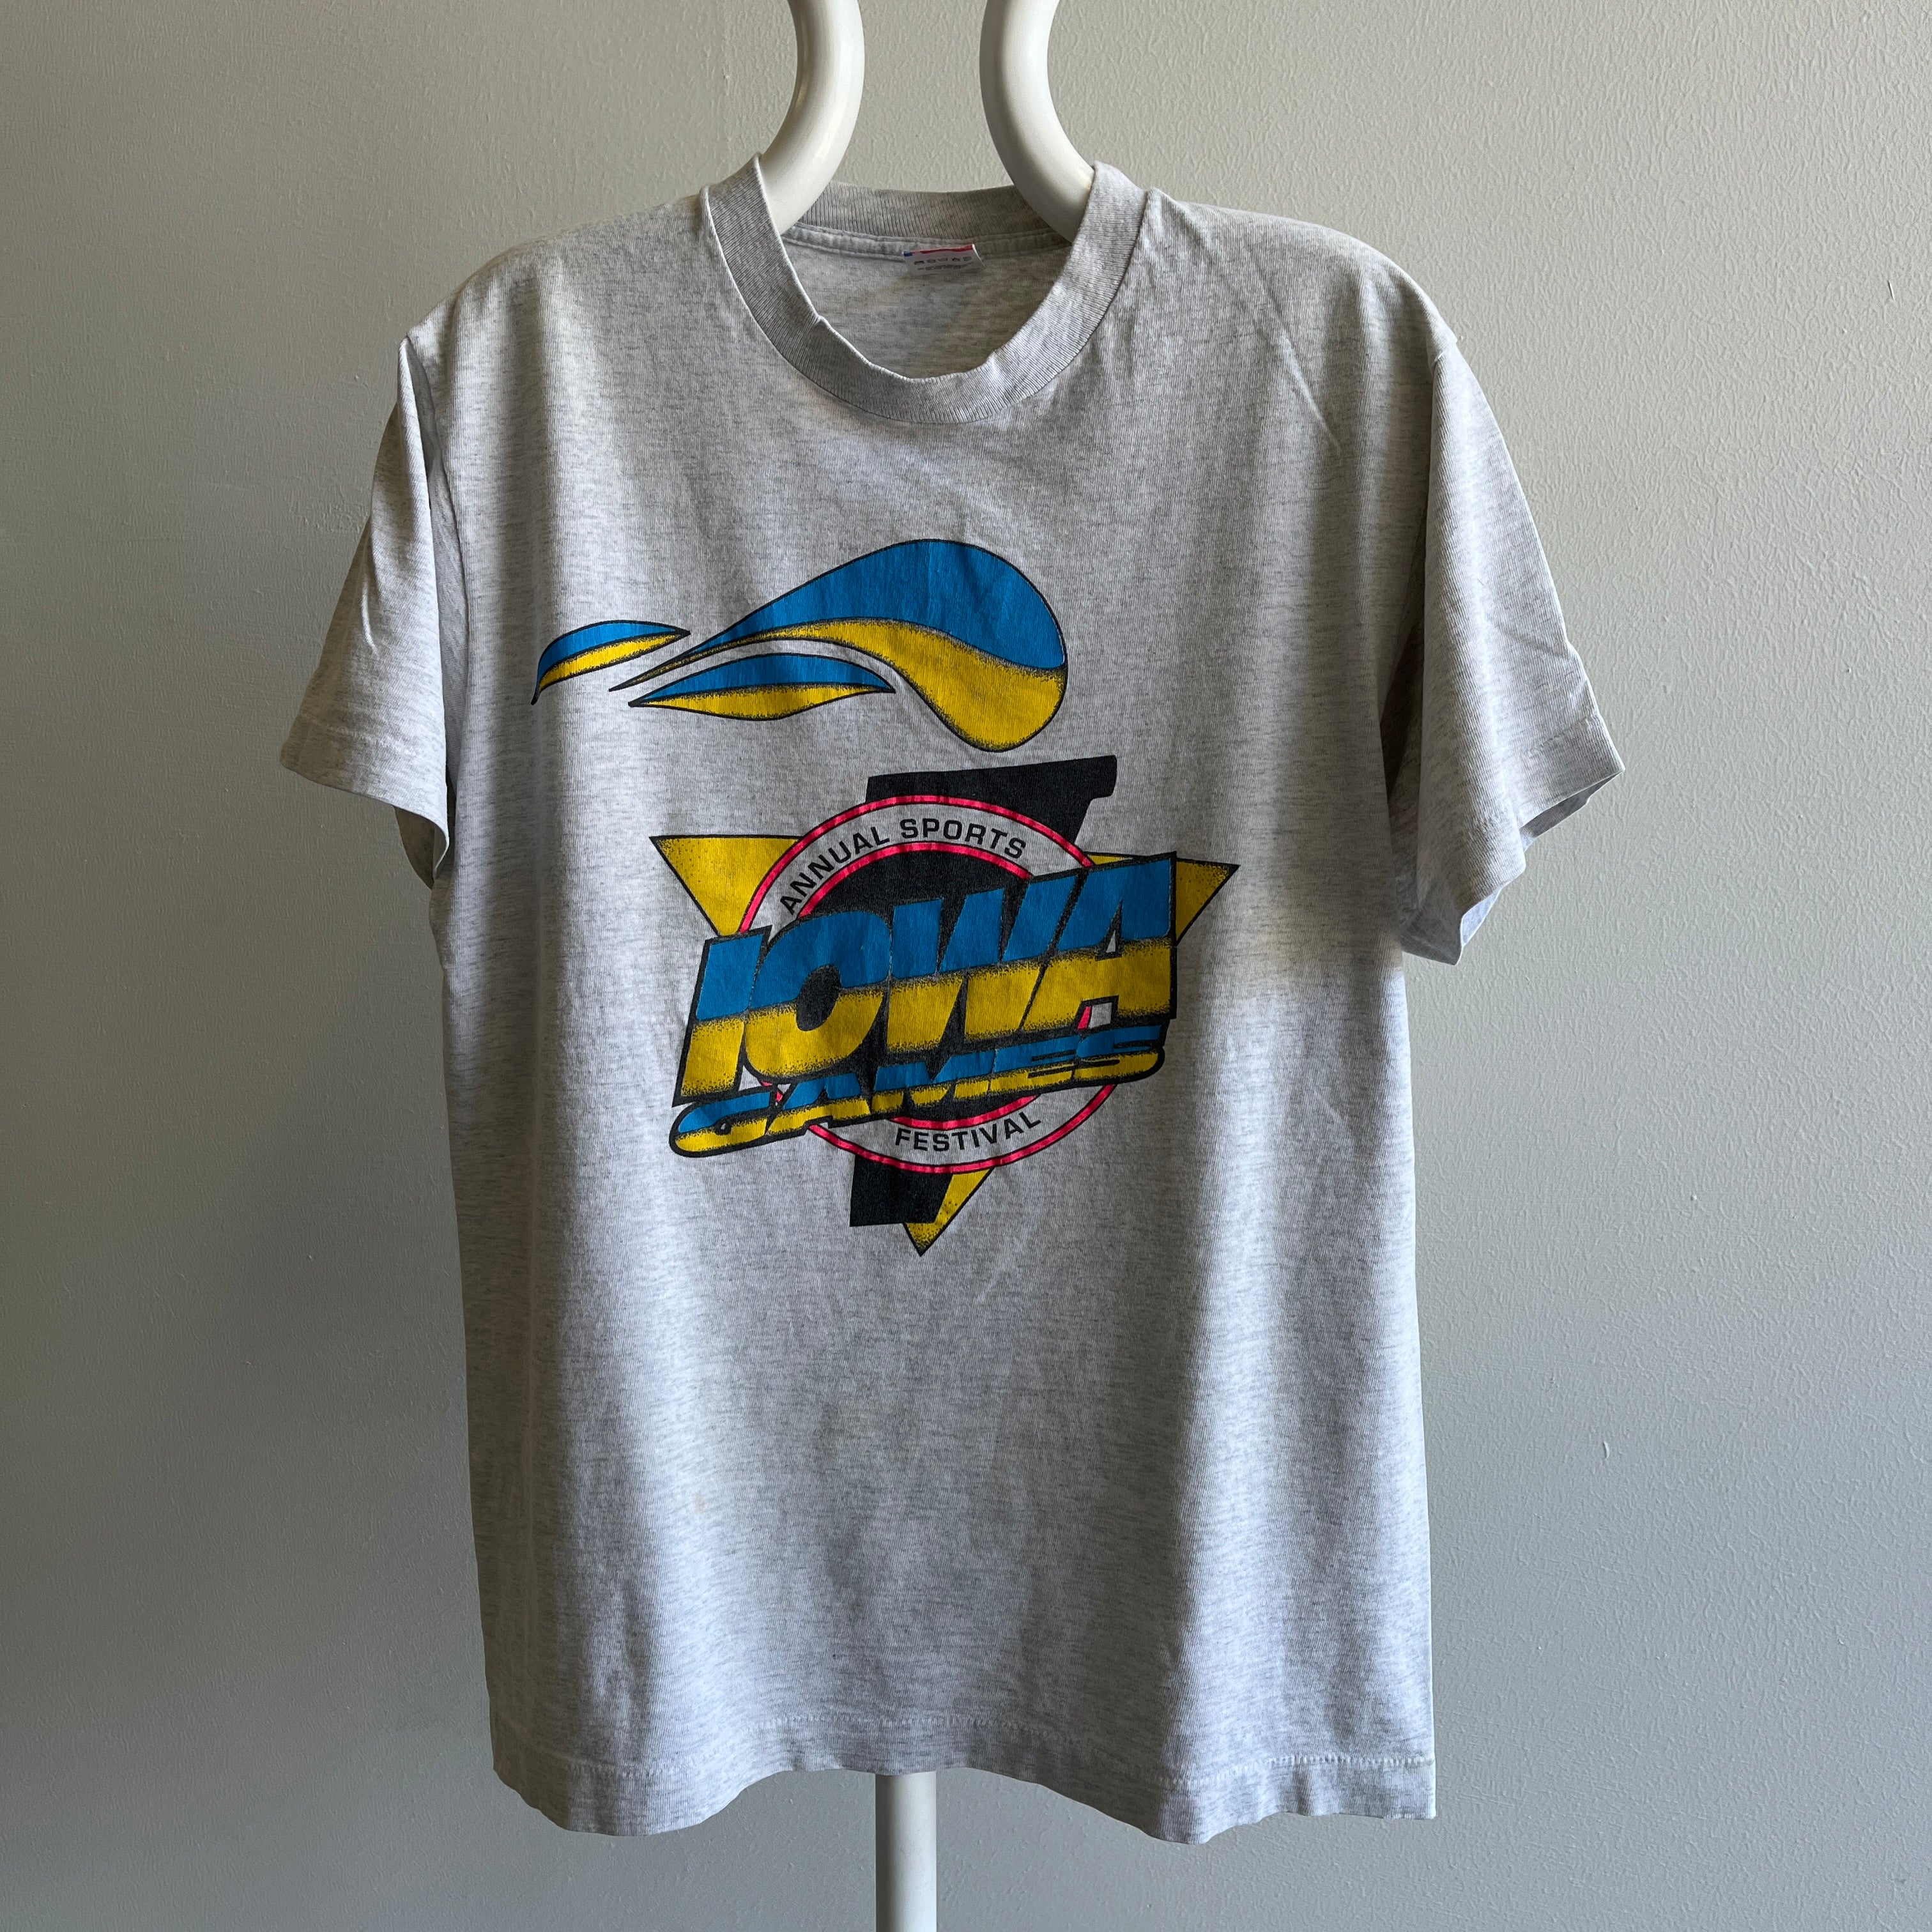 1980s Iowa Games Annual Sports Festival T-Shirt